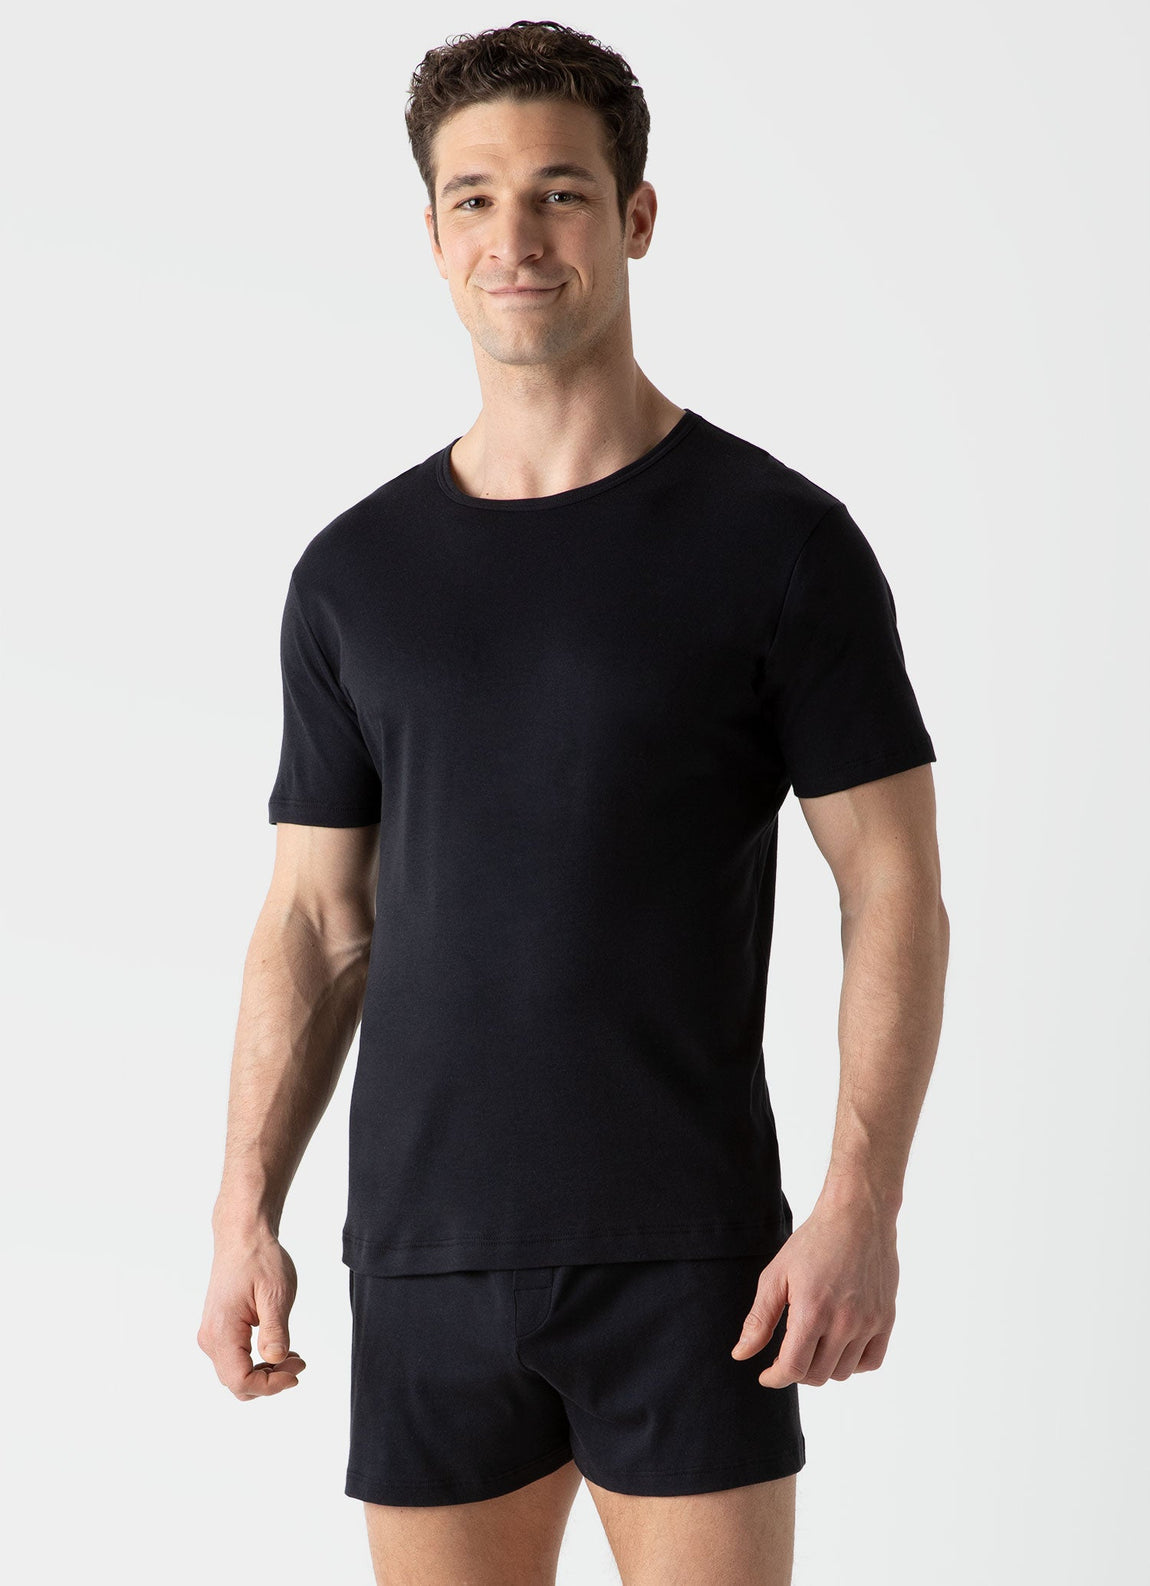 Men's Sea Island Cotton Underwear T-shirt in Black